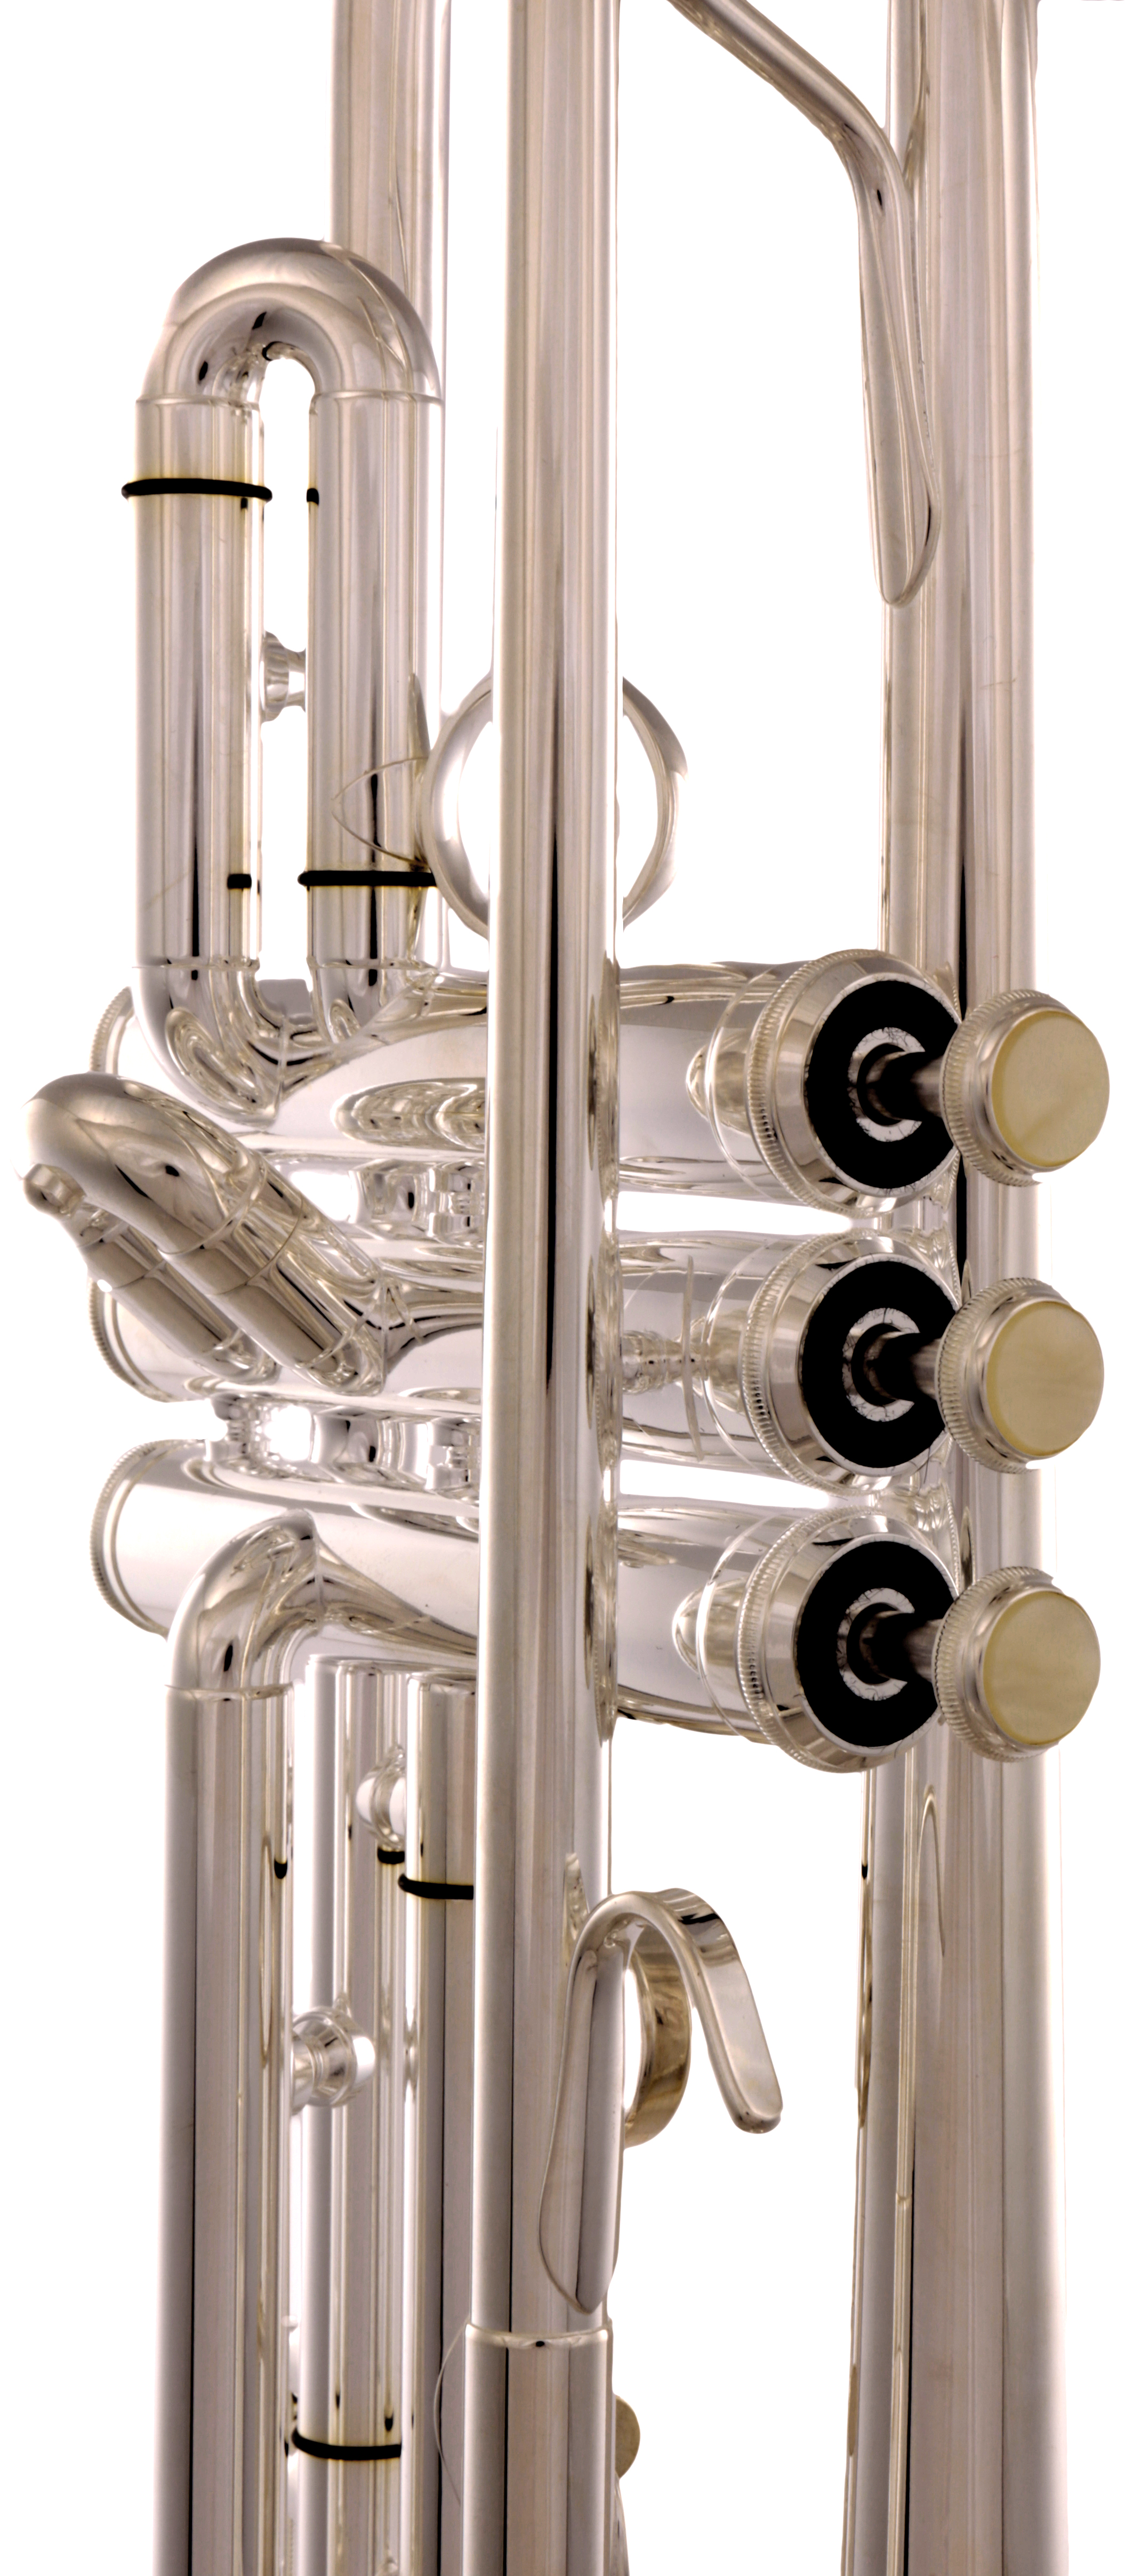 Sella Bb-Trompete mit Leichtetui versilbert